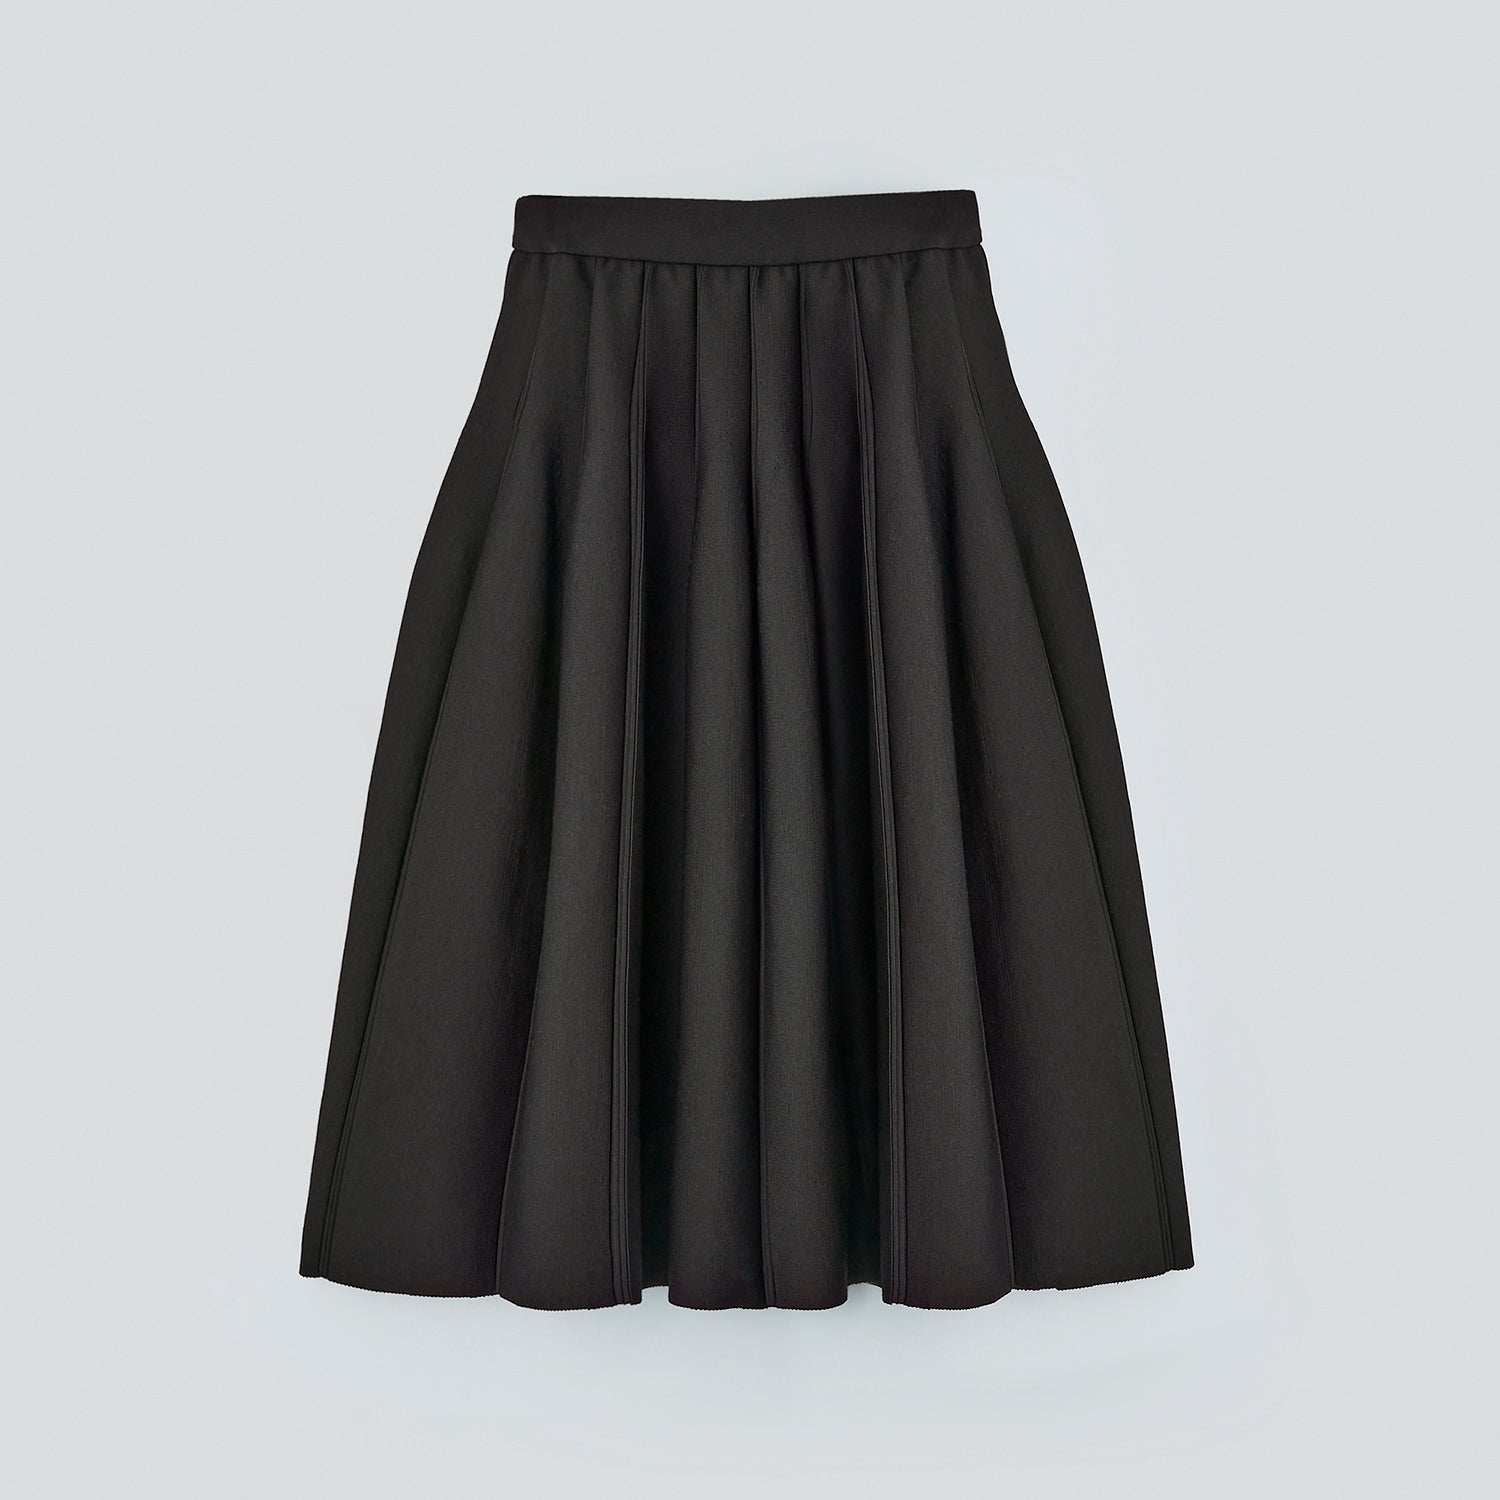 新品未使用FOXEY Lafayette Skirt 40 ブラックブラック